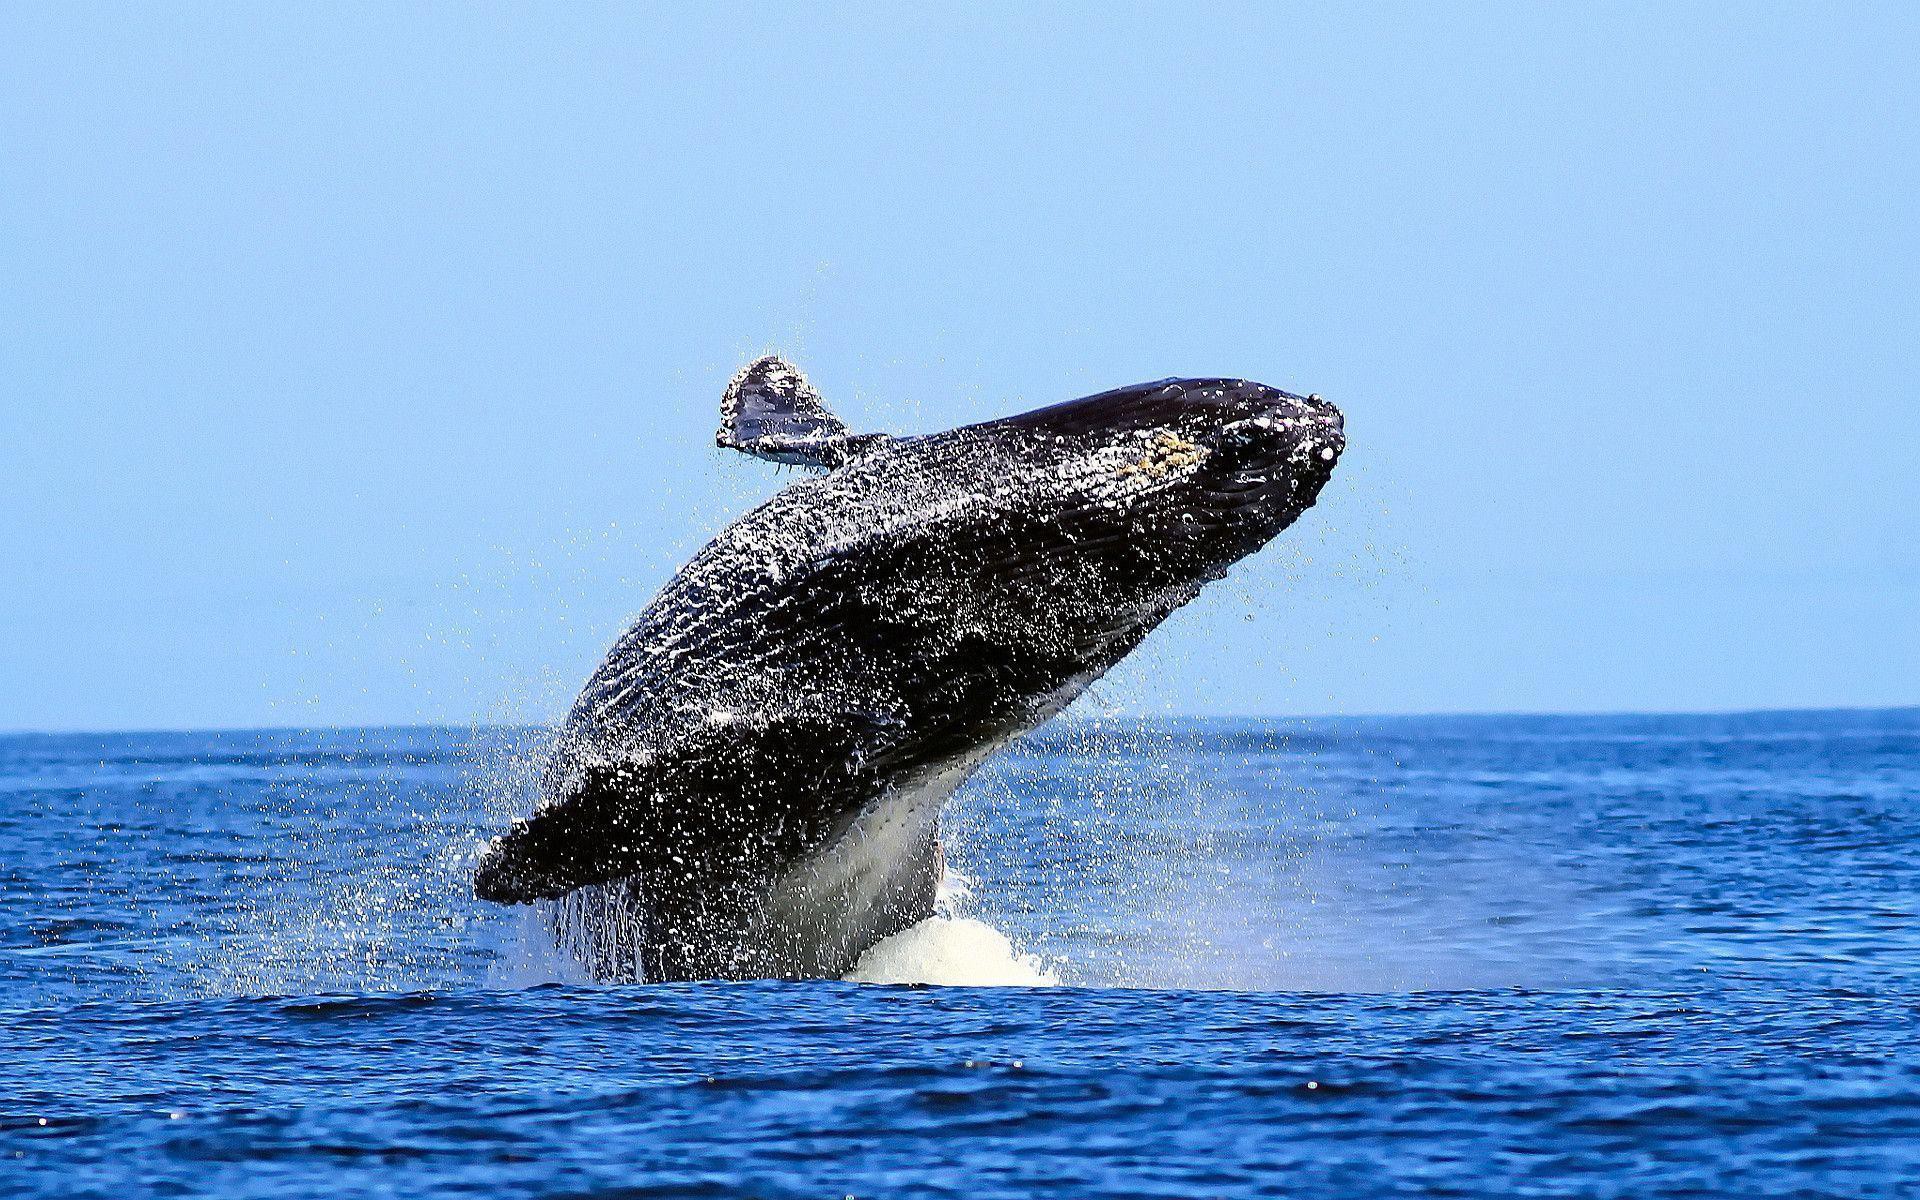 Ngất ngây với bức ảnh cá voi lưng gù phi thân dựng đứng trên mặt biển - Ảnh 6.